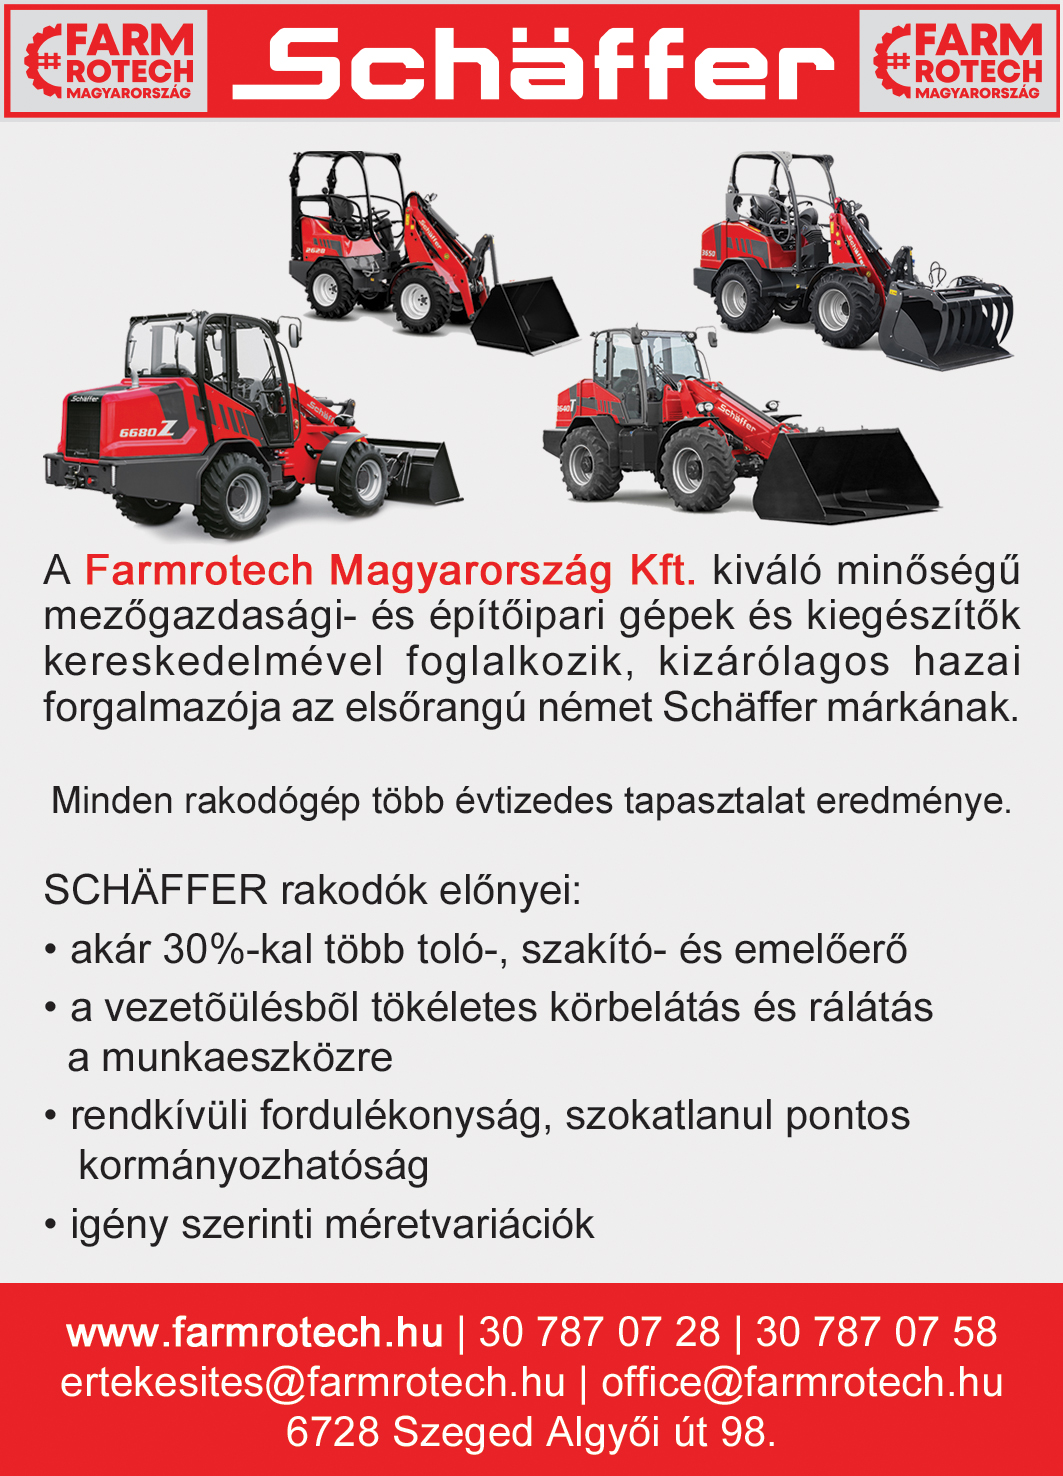 Farmrotech Magyarország Kft. - mezőgazdasági- és építőipari gépek